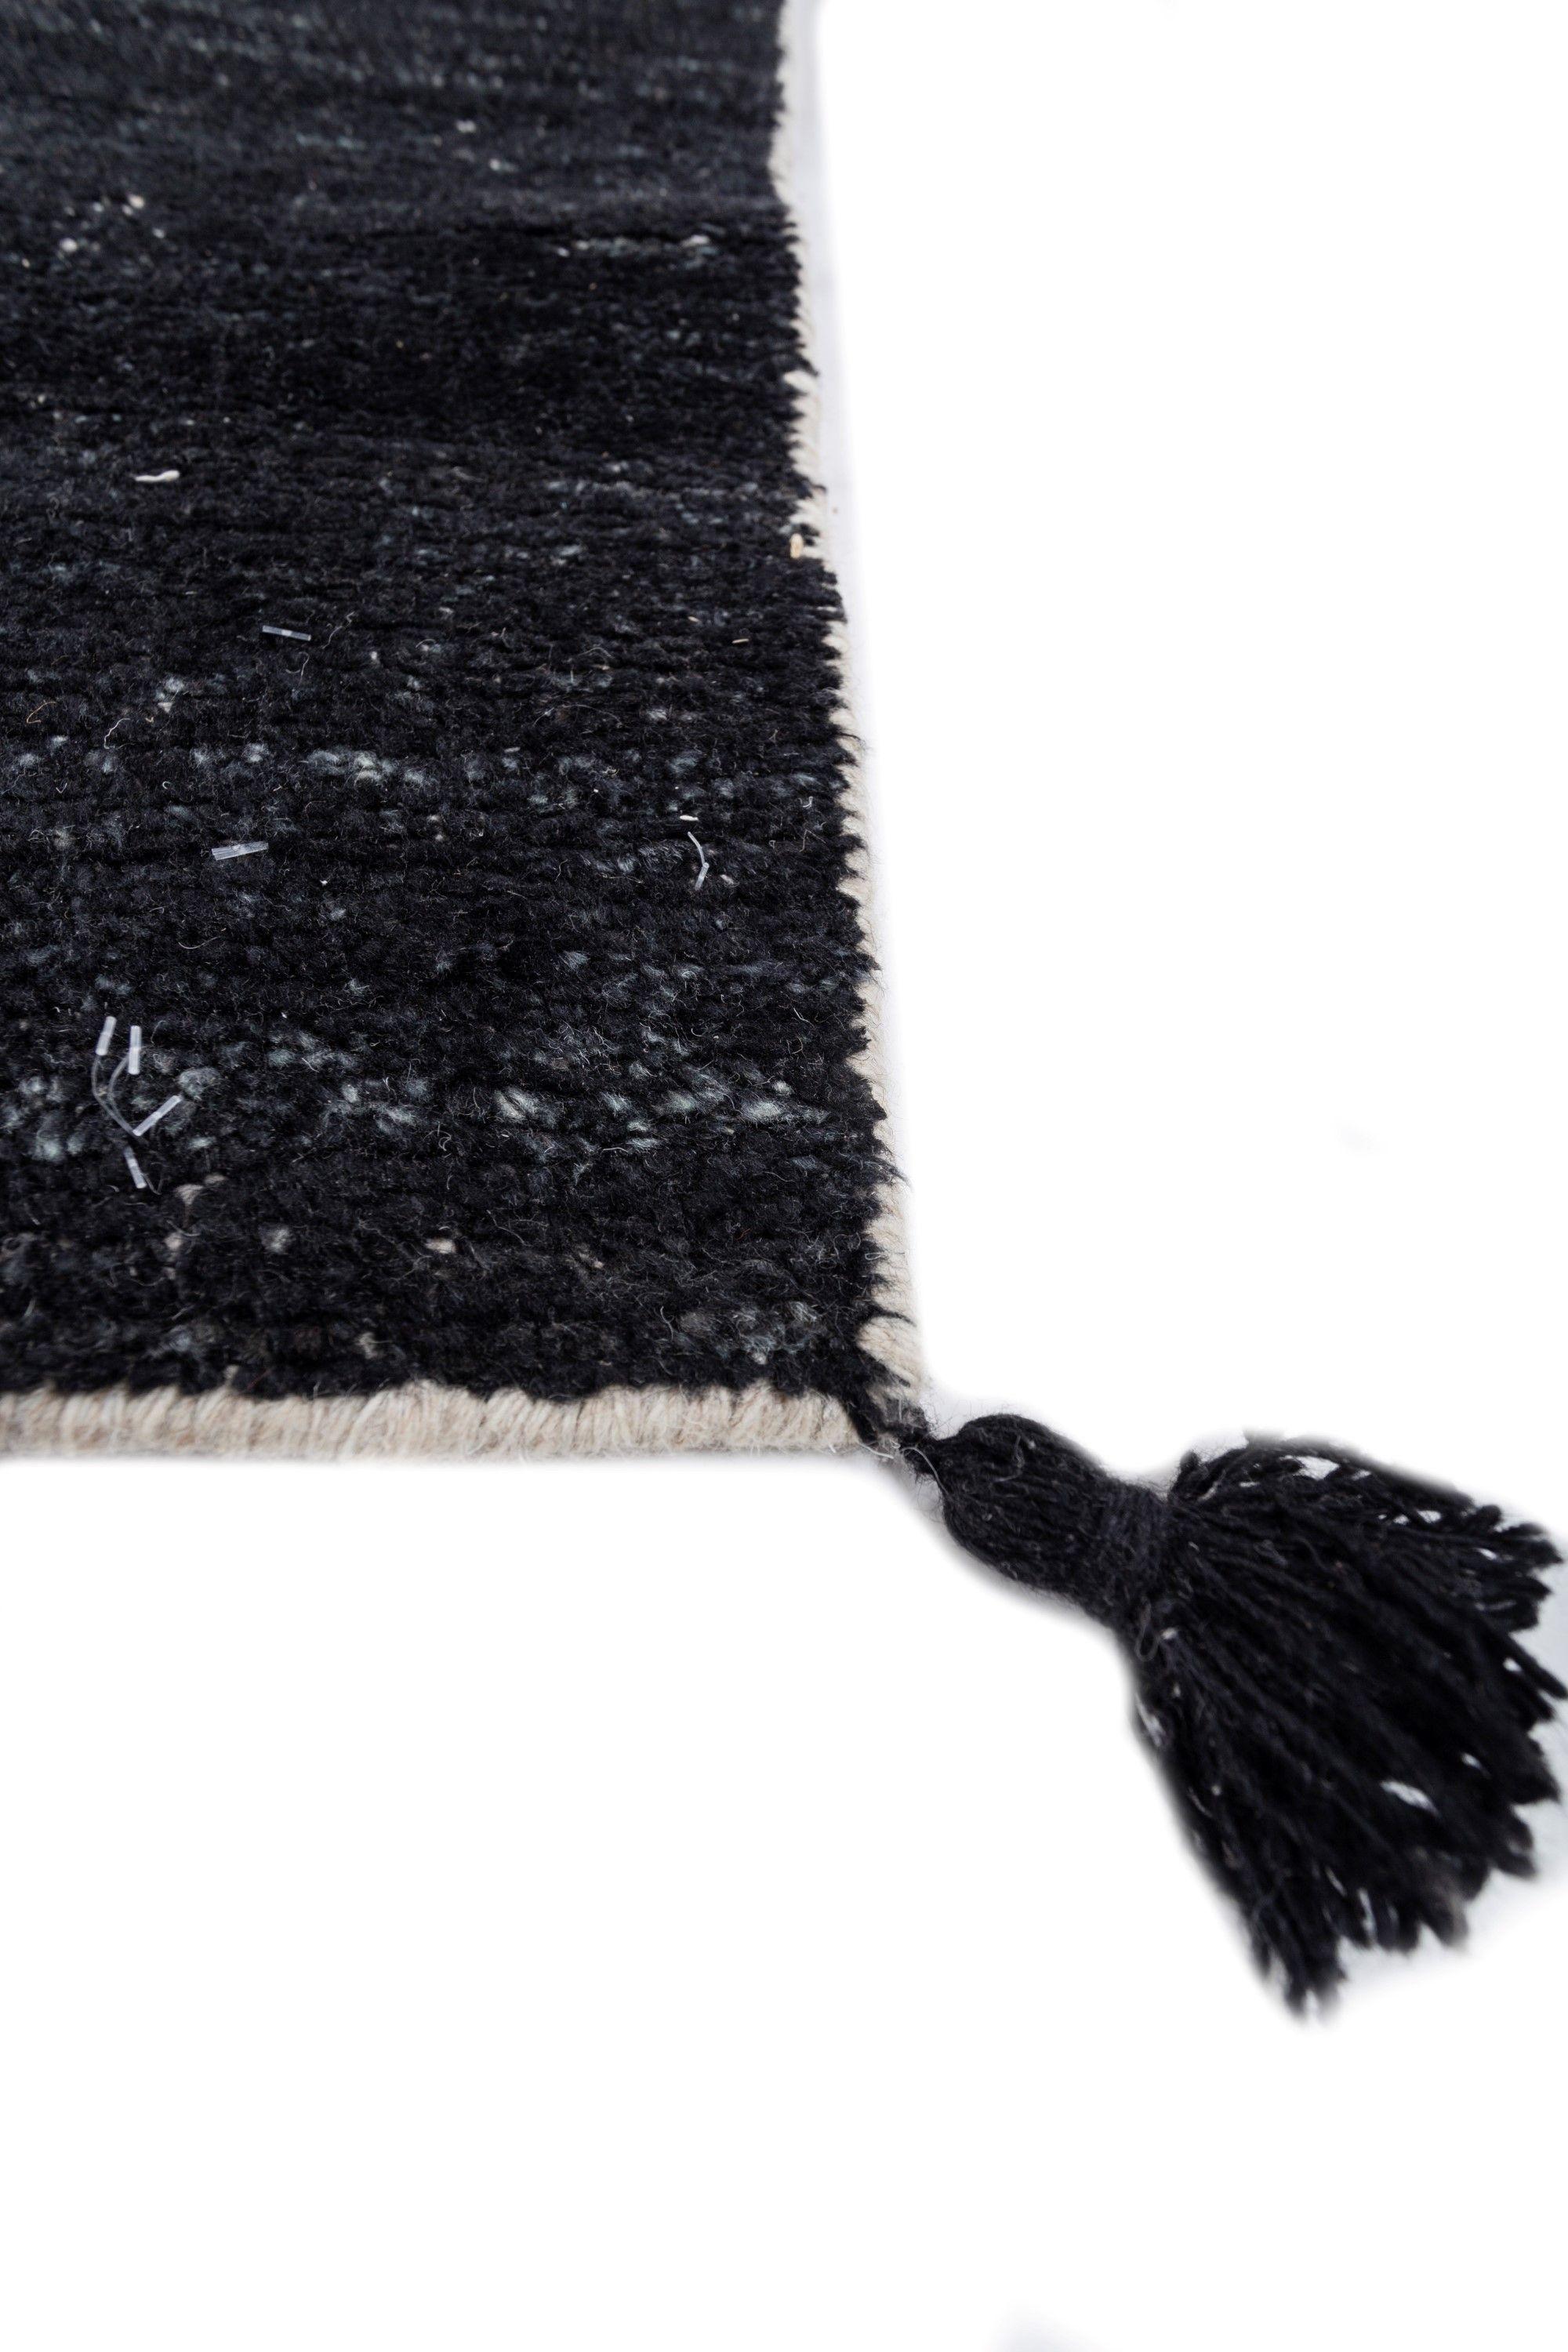 Embarquez pour un voyage visuel avec ce tapis en laine de notre collection Aprezo. L'esthétique du tapis est un témoignage de l'art, avec un motif qui s'entrelace délicatement, ressemblant à l'écoulement poétique de deux mers qui se rejoignent. La